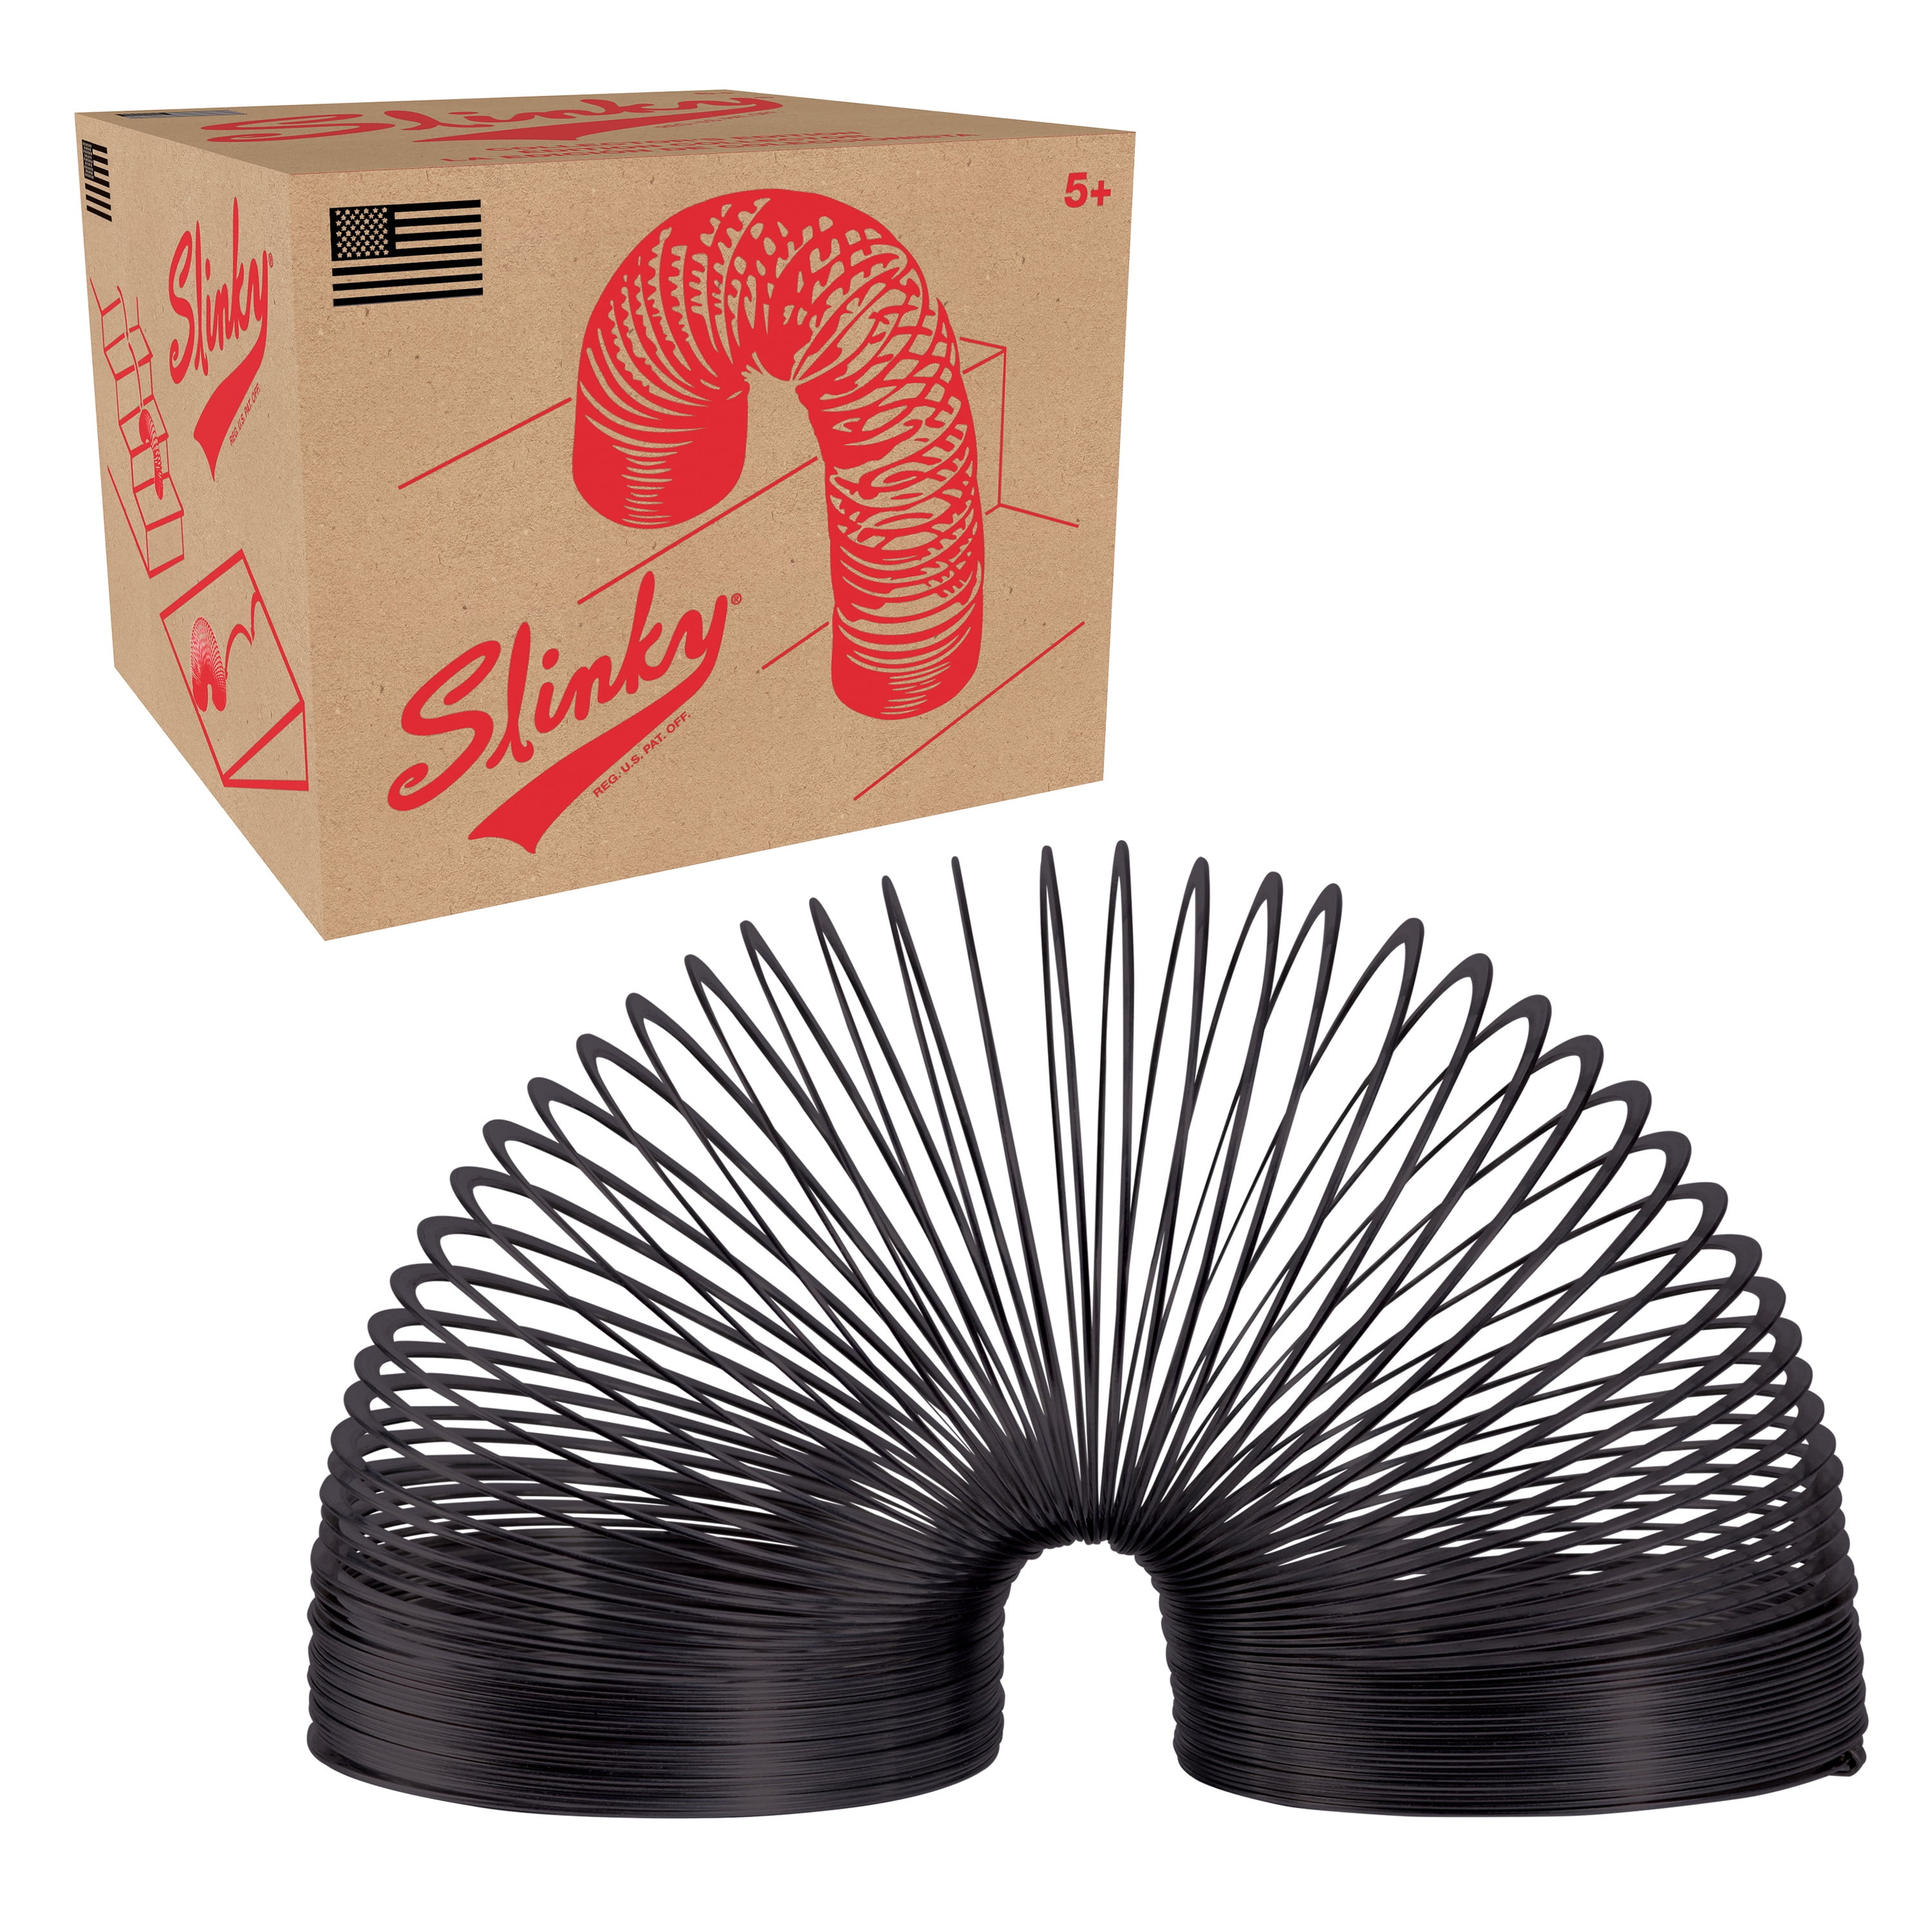 Original Slinky Jr Walking Metal Coil Spring Toy 2014 for sale online 